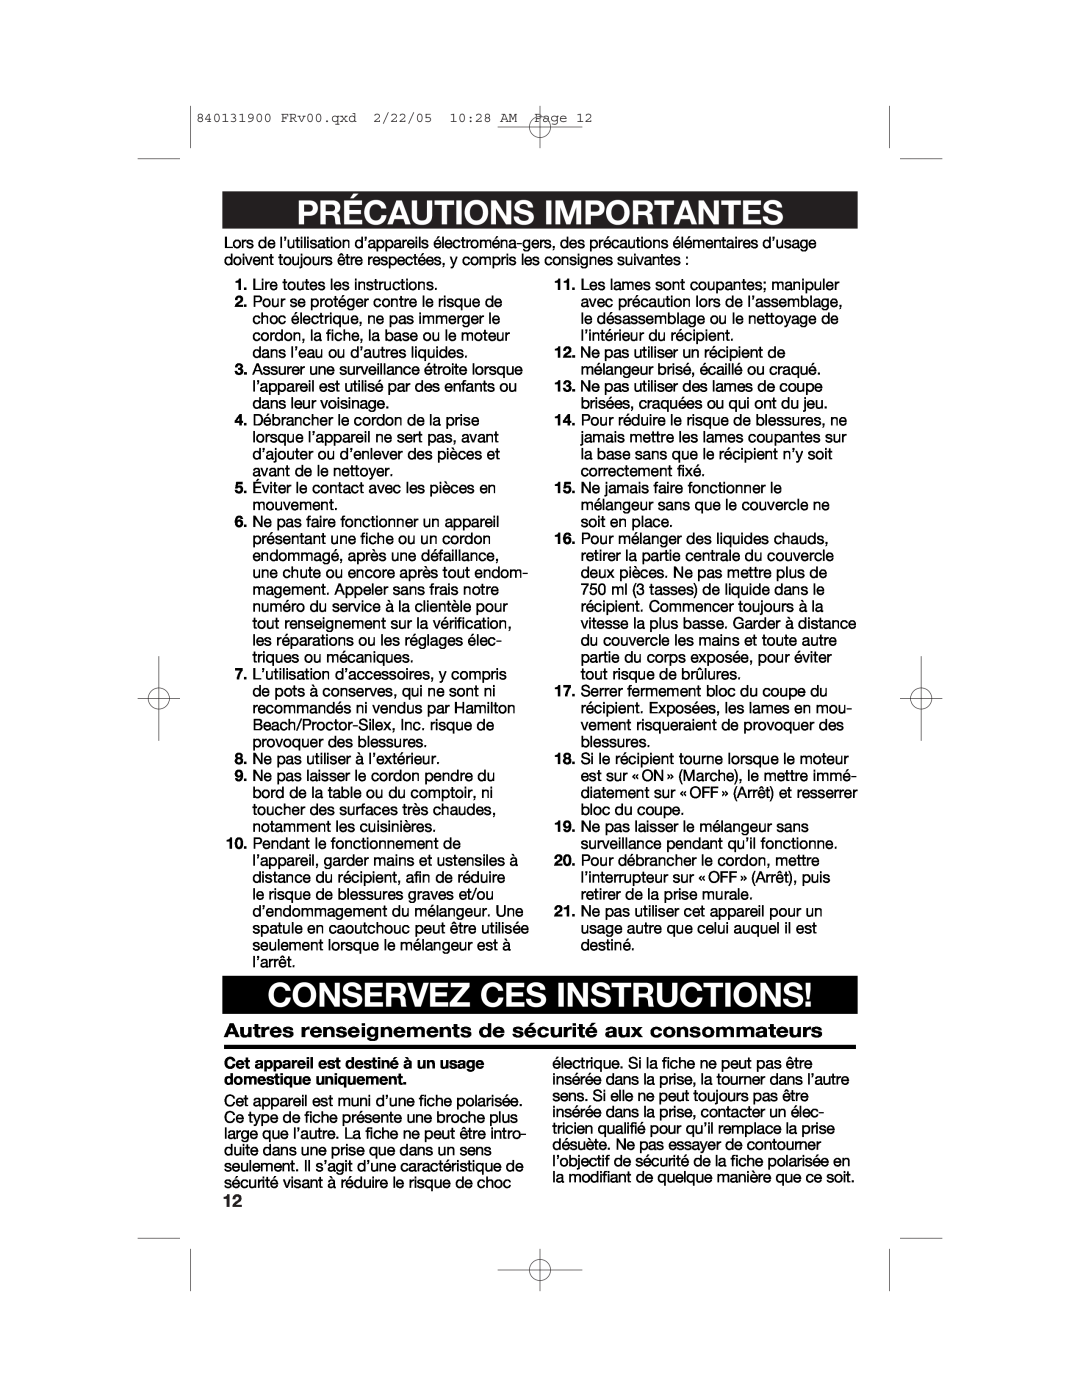 Hamilton Beach 50754C manual Précautions Importantes, Conservez Ces Instructions 